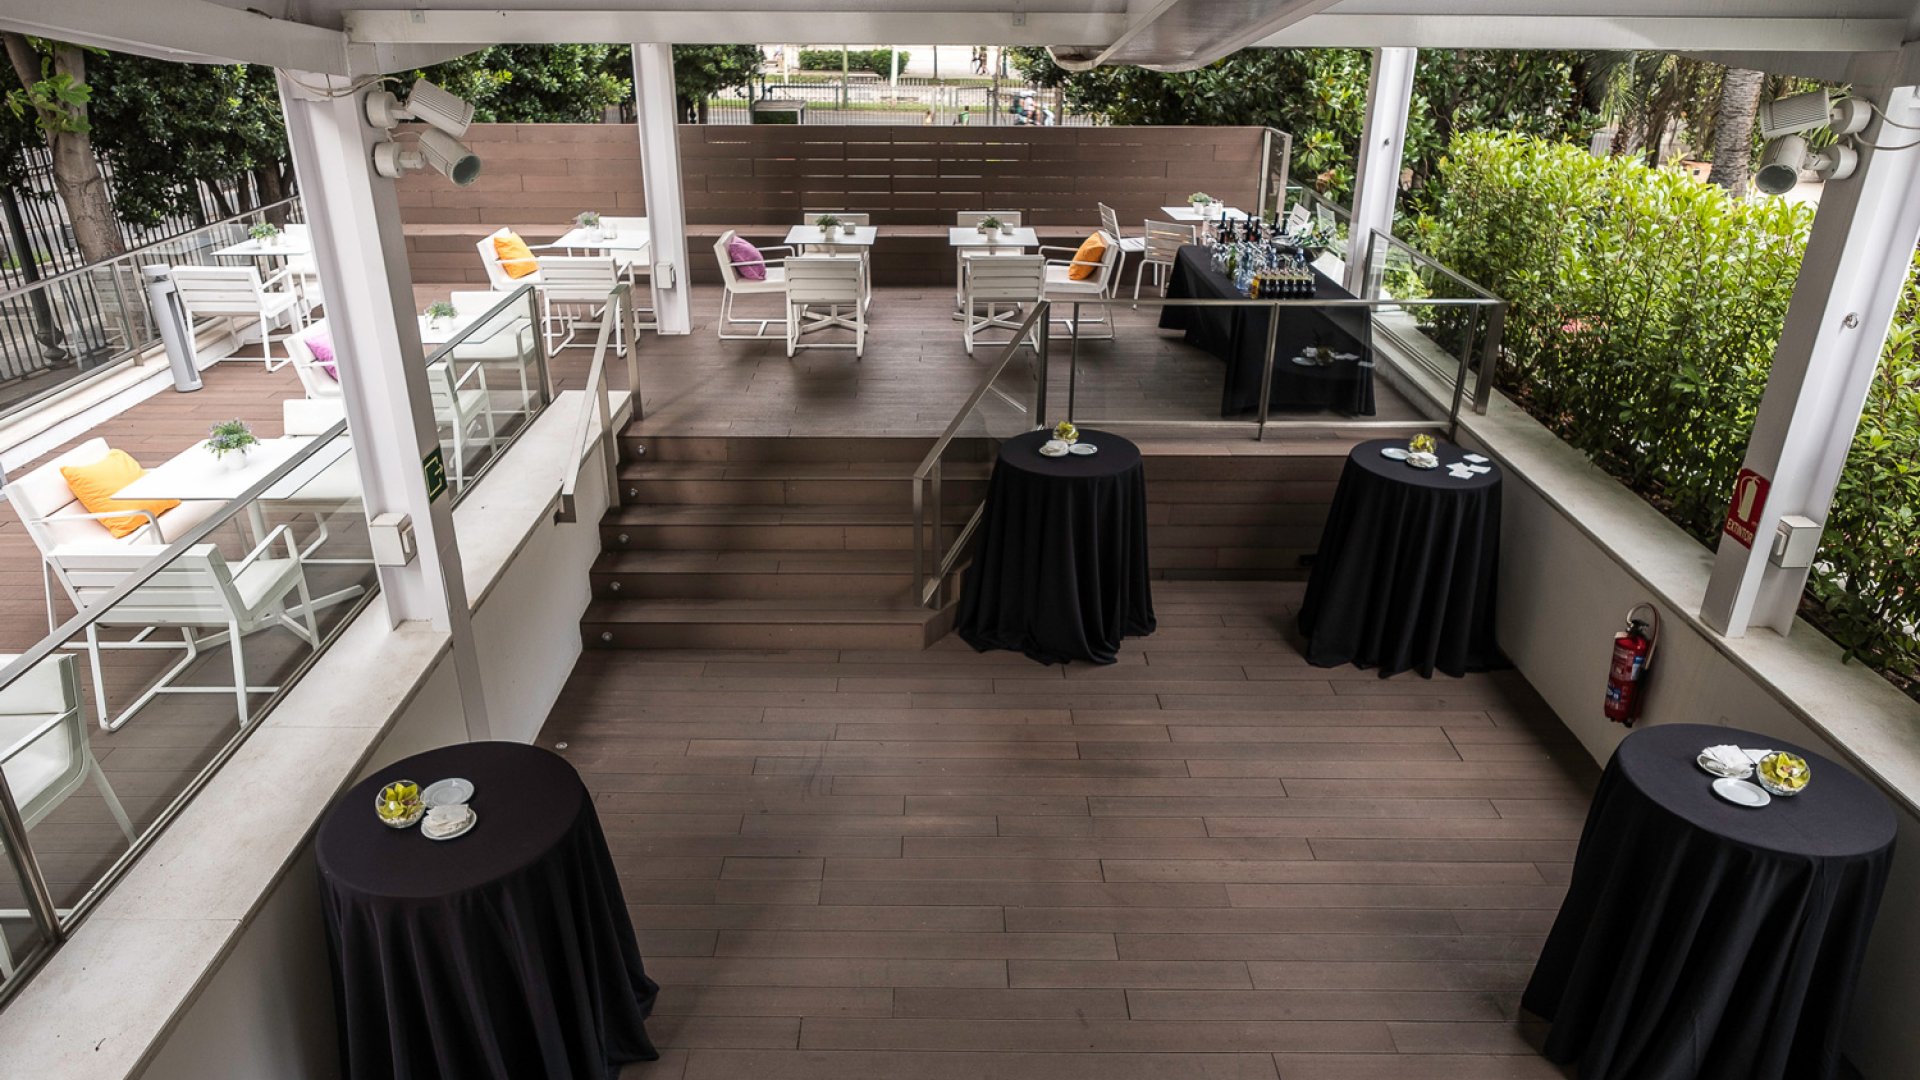 Terraza con suelo de madera oscura y mesas redondas vestidas con manteles negros a los lados